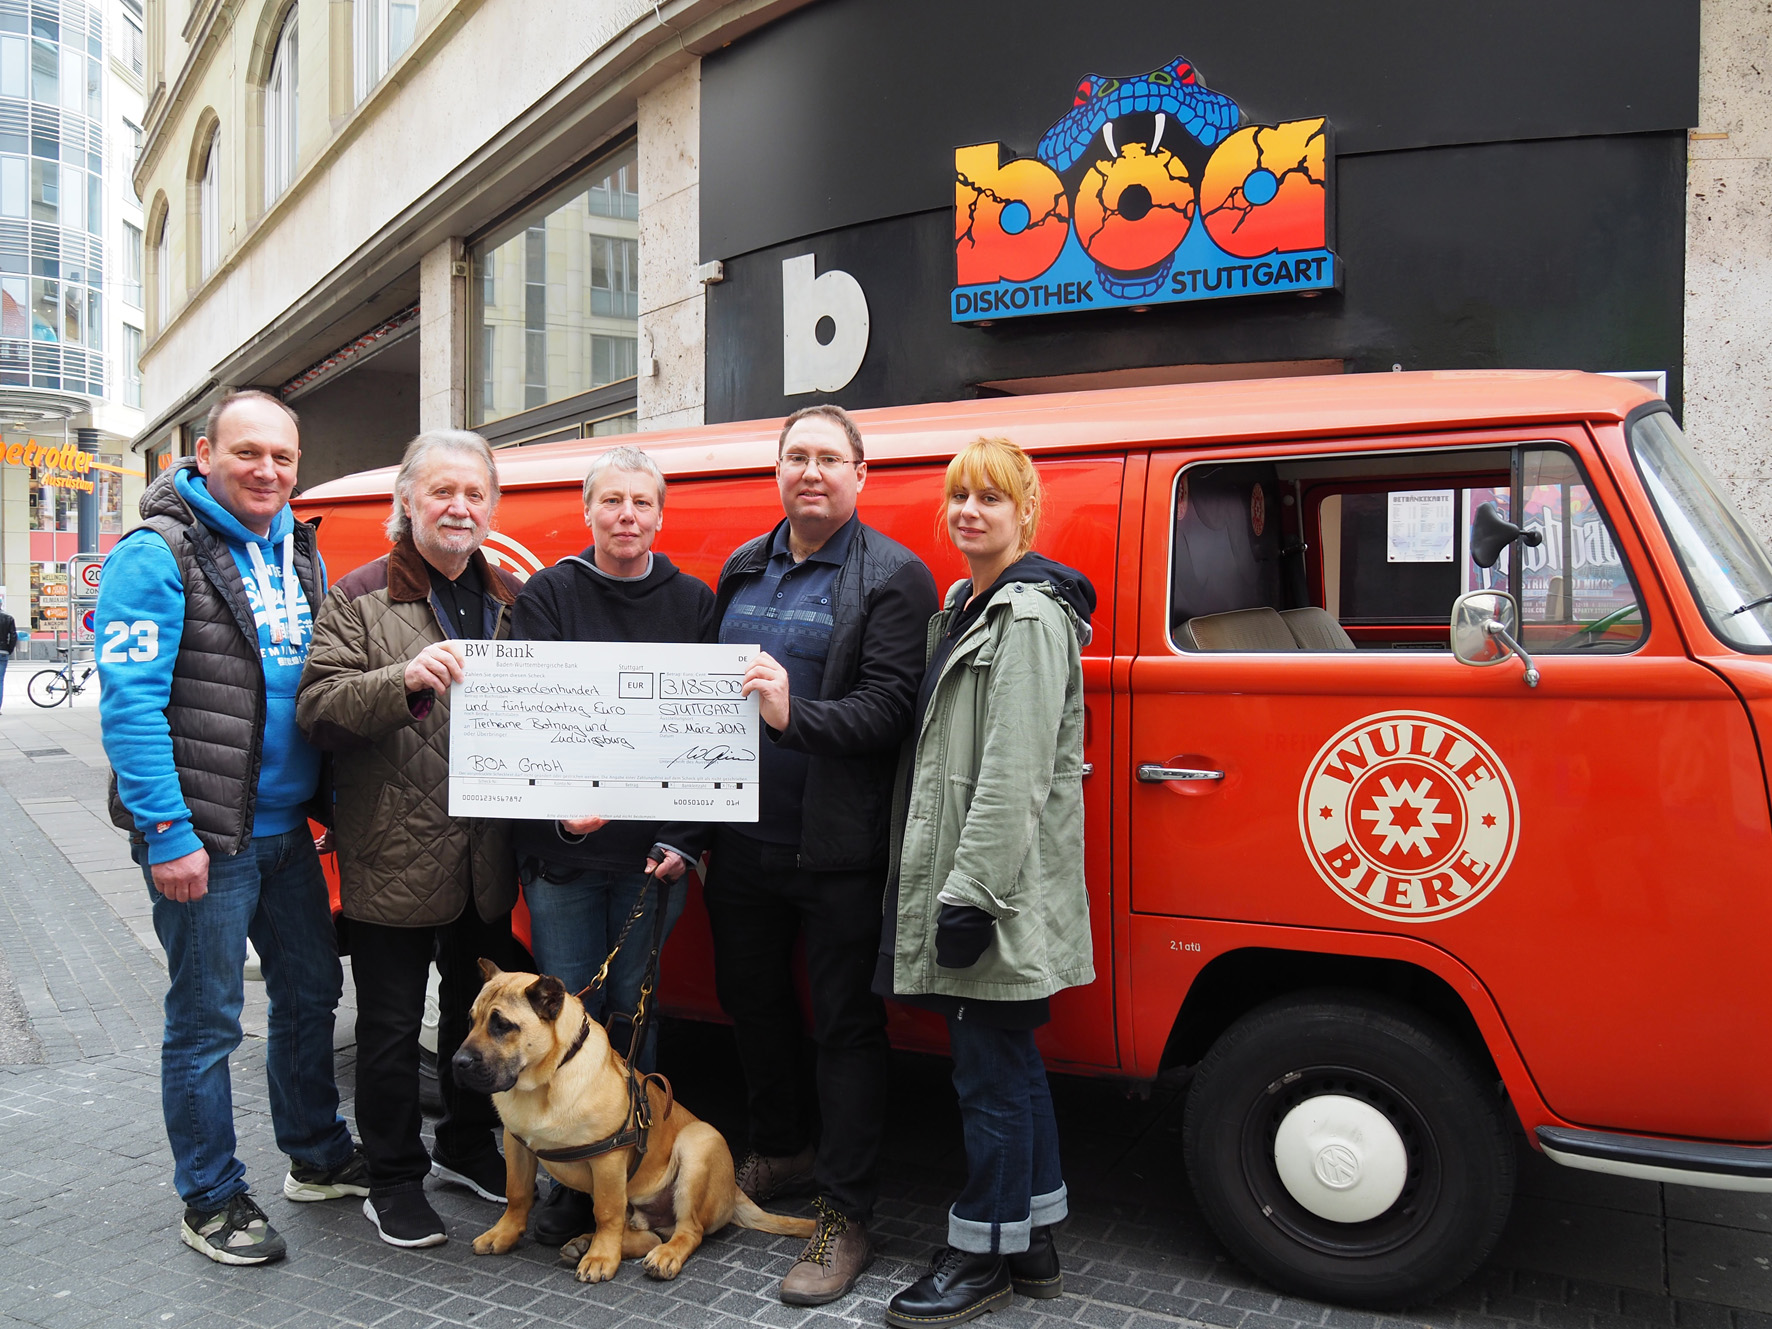 Fünf Personen und ein Hund stehen vor einem roten Lieferwagen und halten einen großen Spendenscheck hoch.